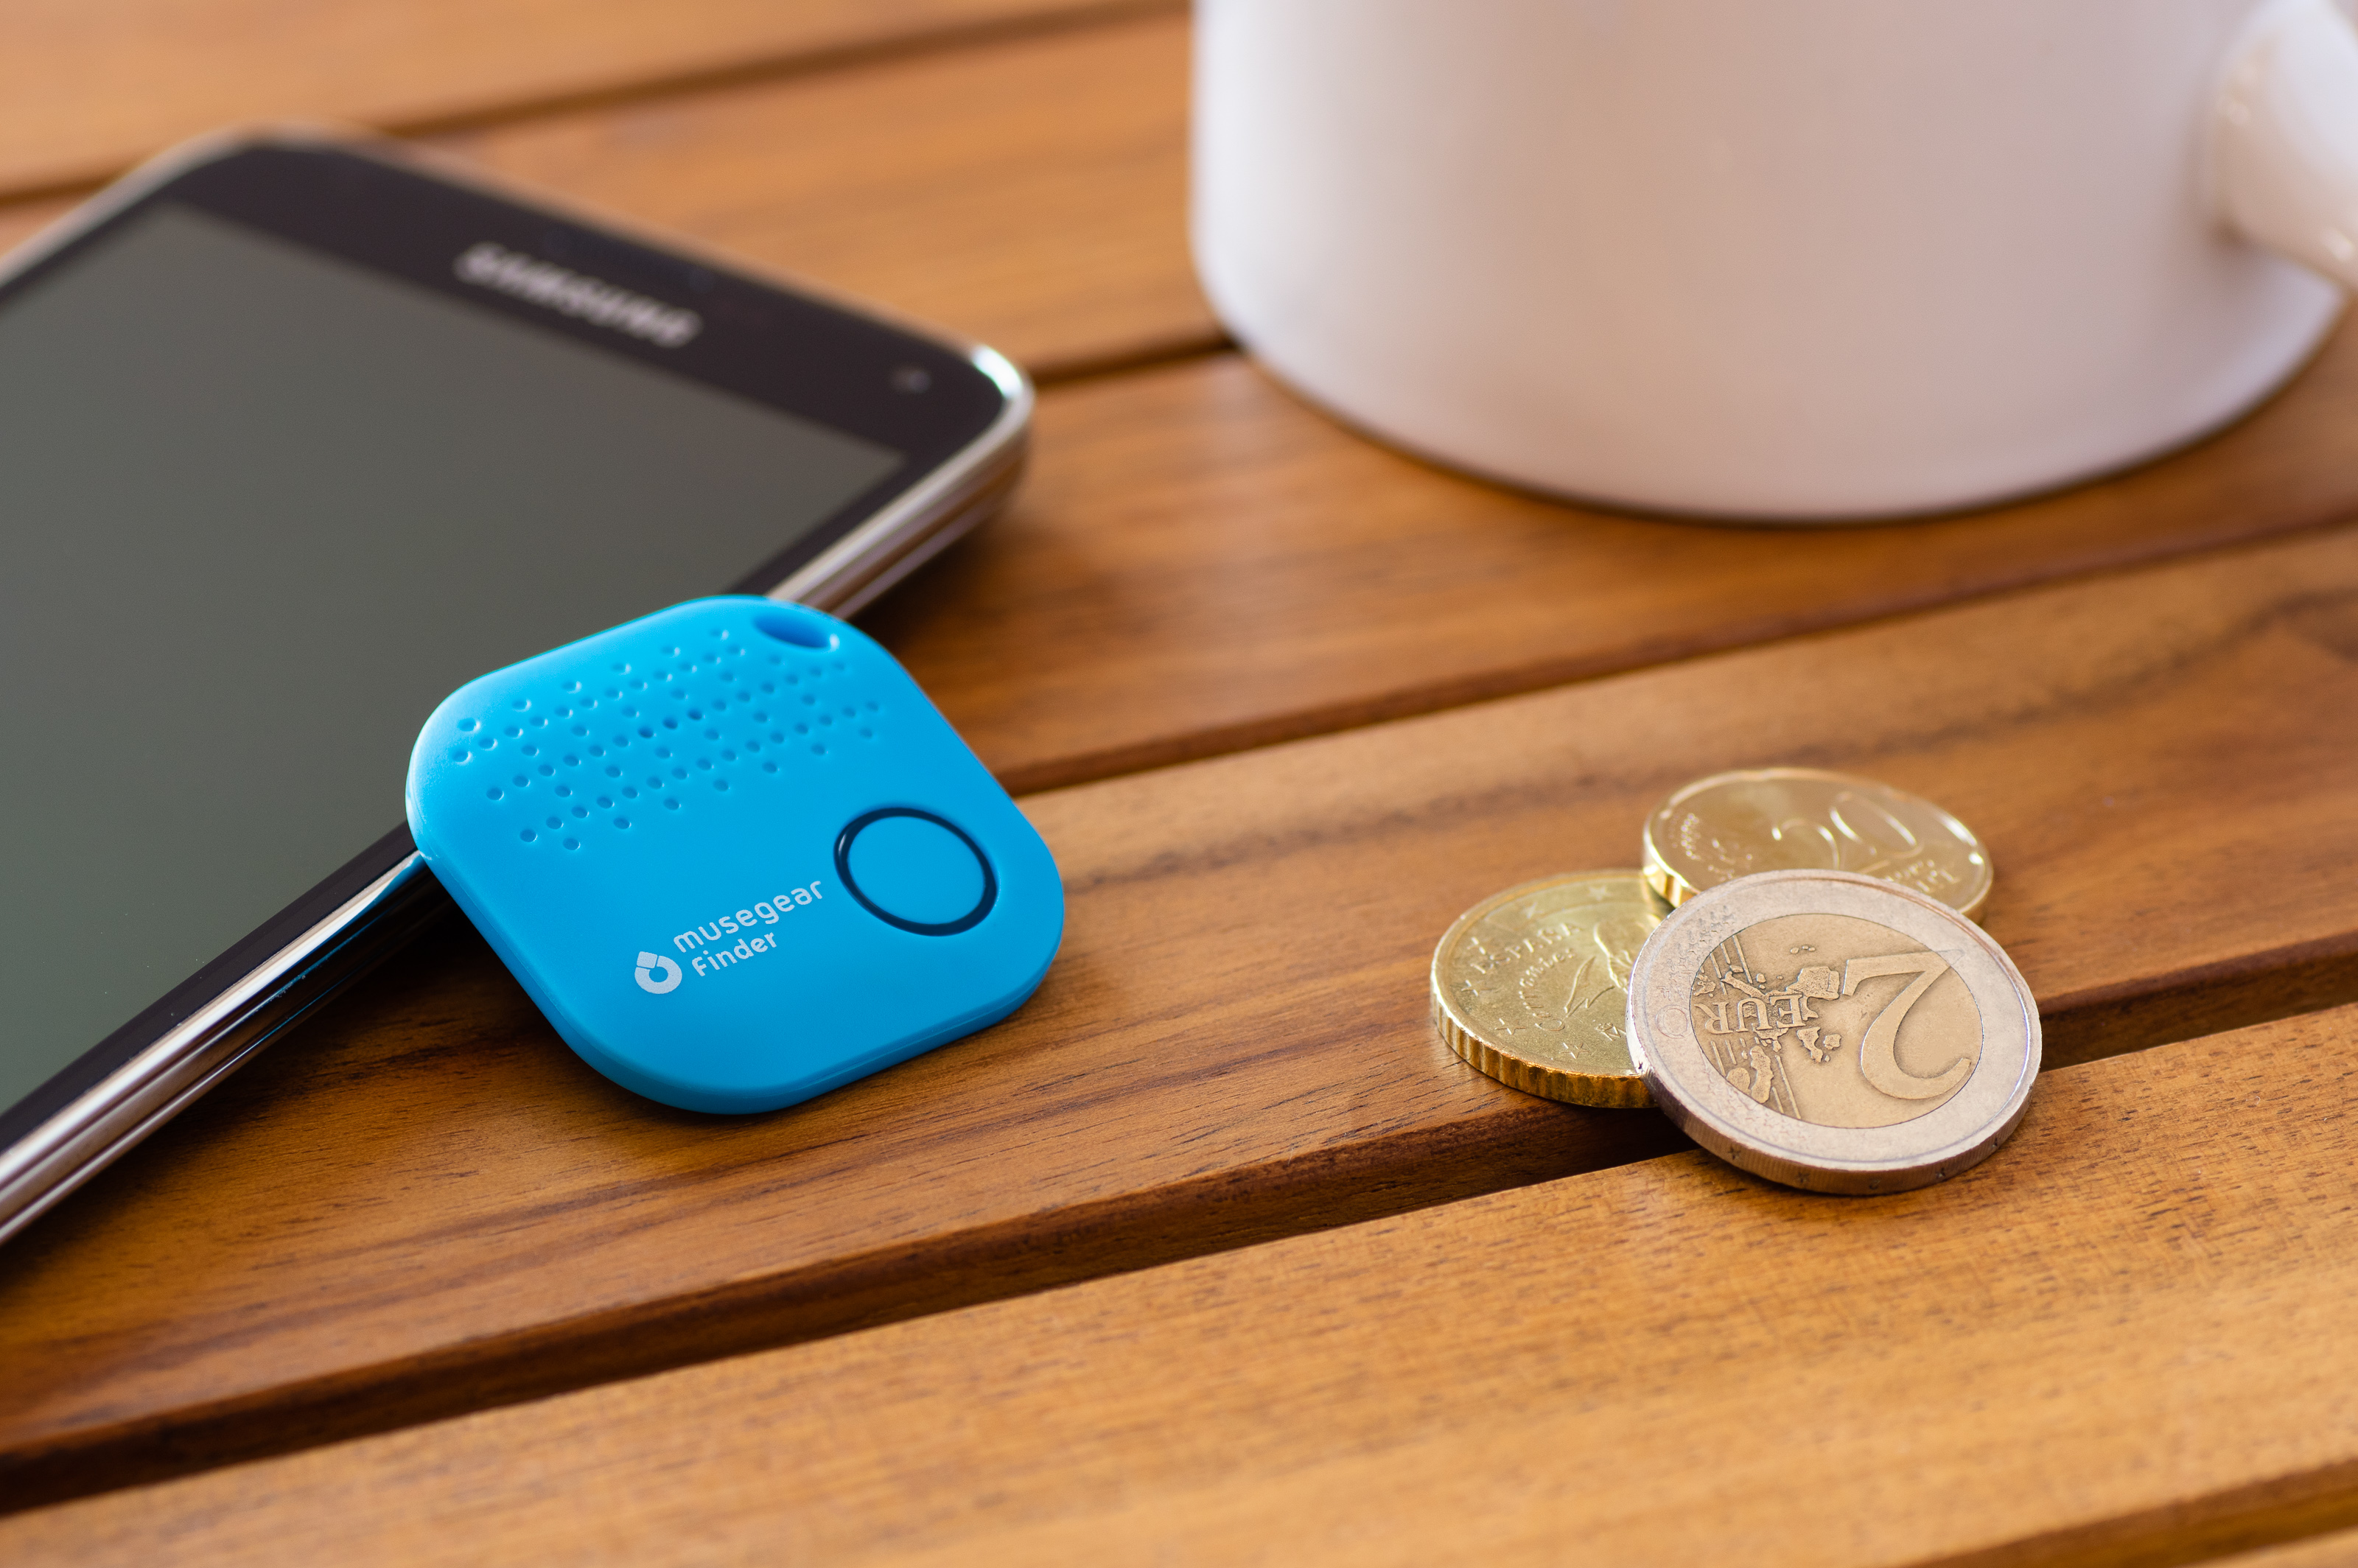 Bluetooth MUSEGEAR Schlüsselfinder Bluetooth aus mit App Deutschland Schlüsselfinder